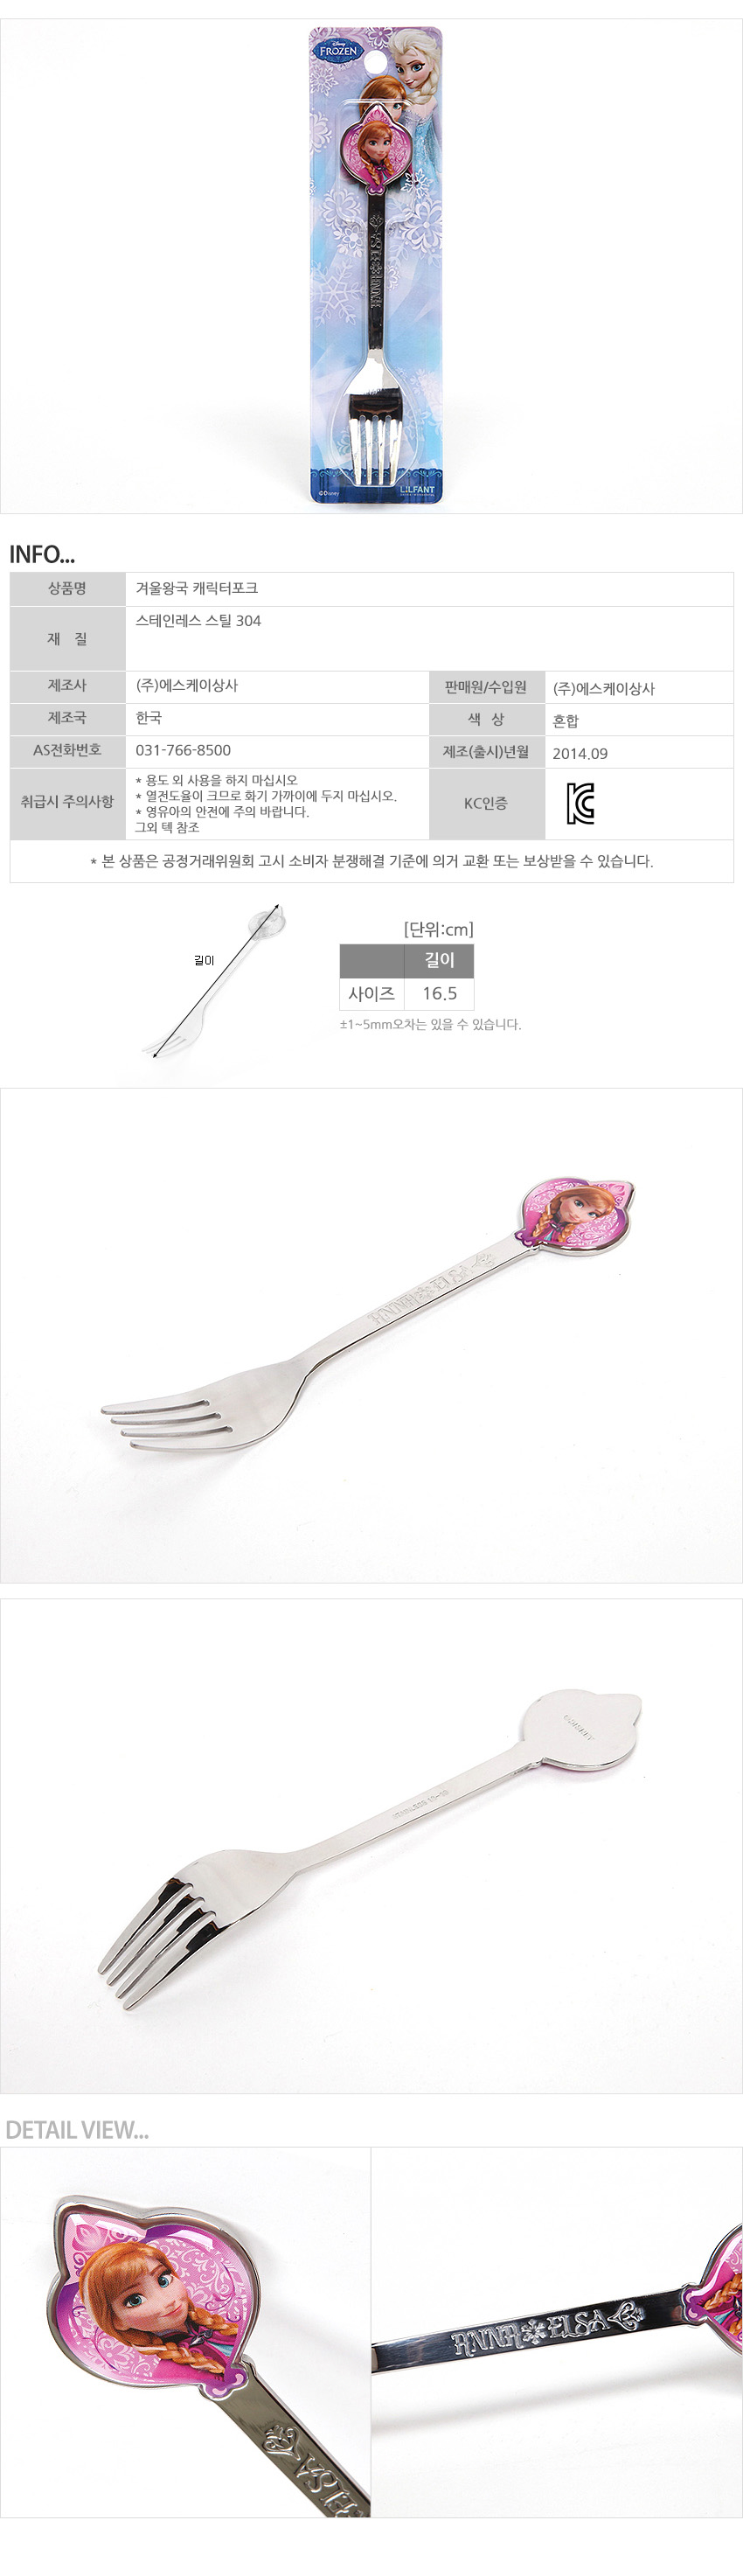 韓國製FROZEN冰雪奇緣不鏽鋼叉子